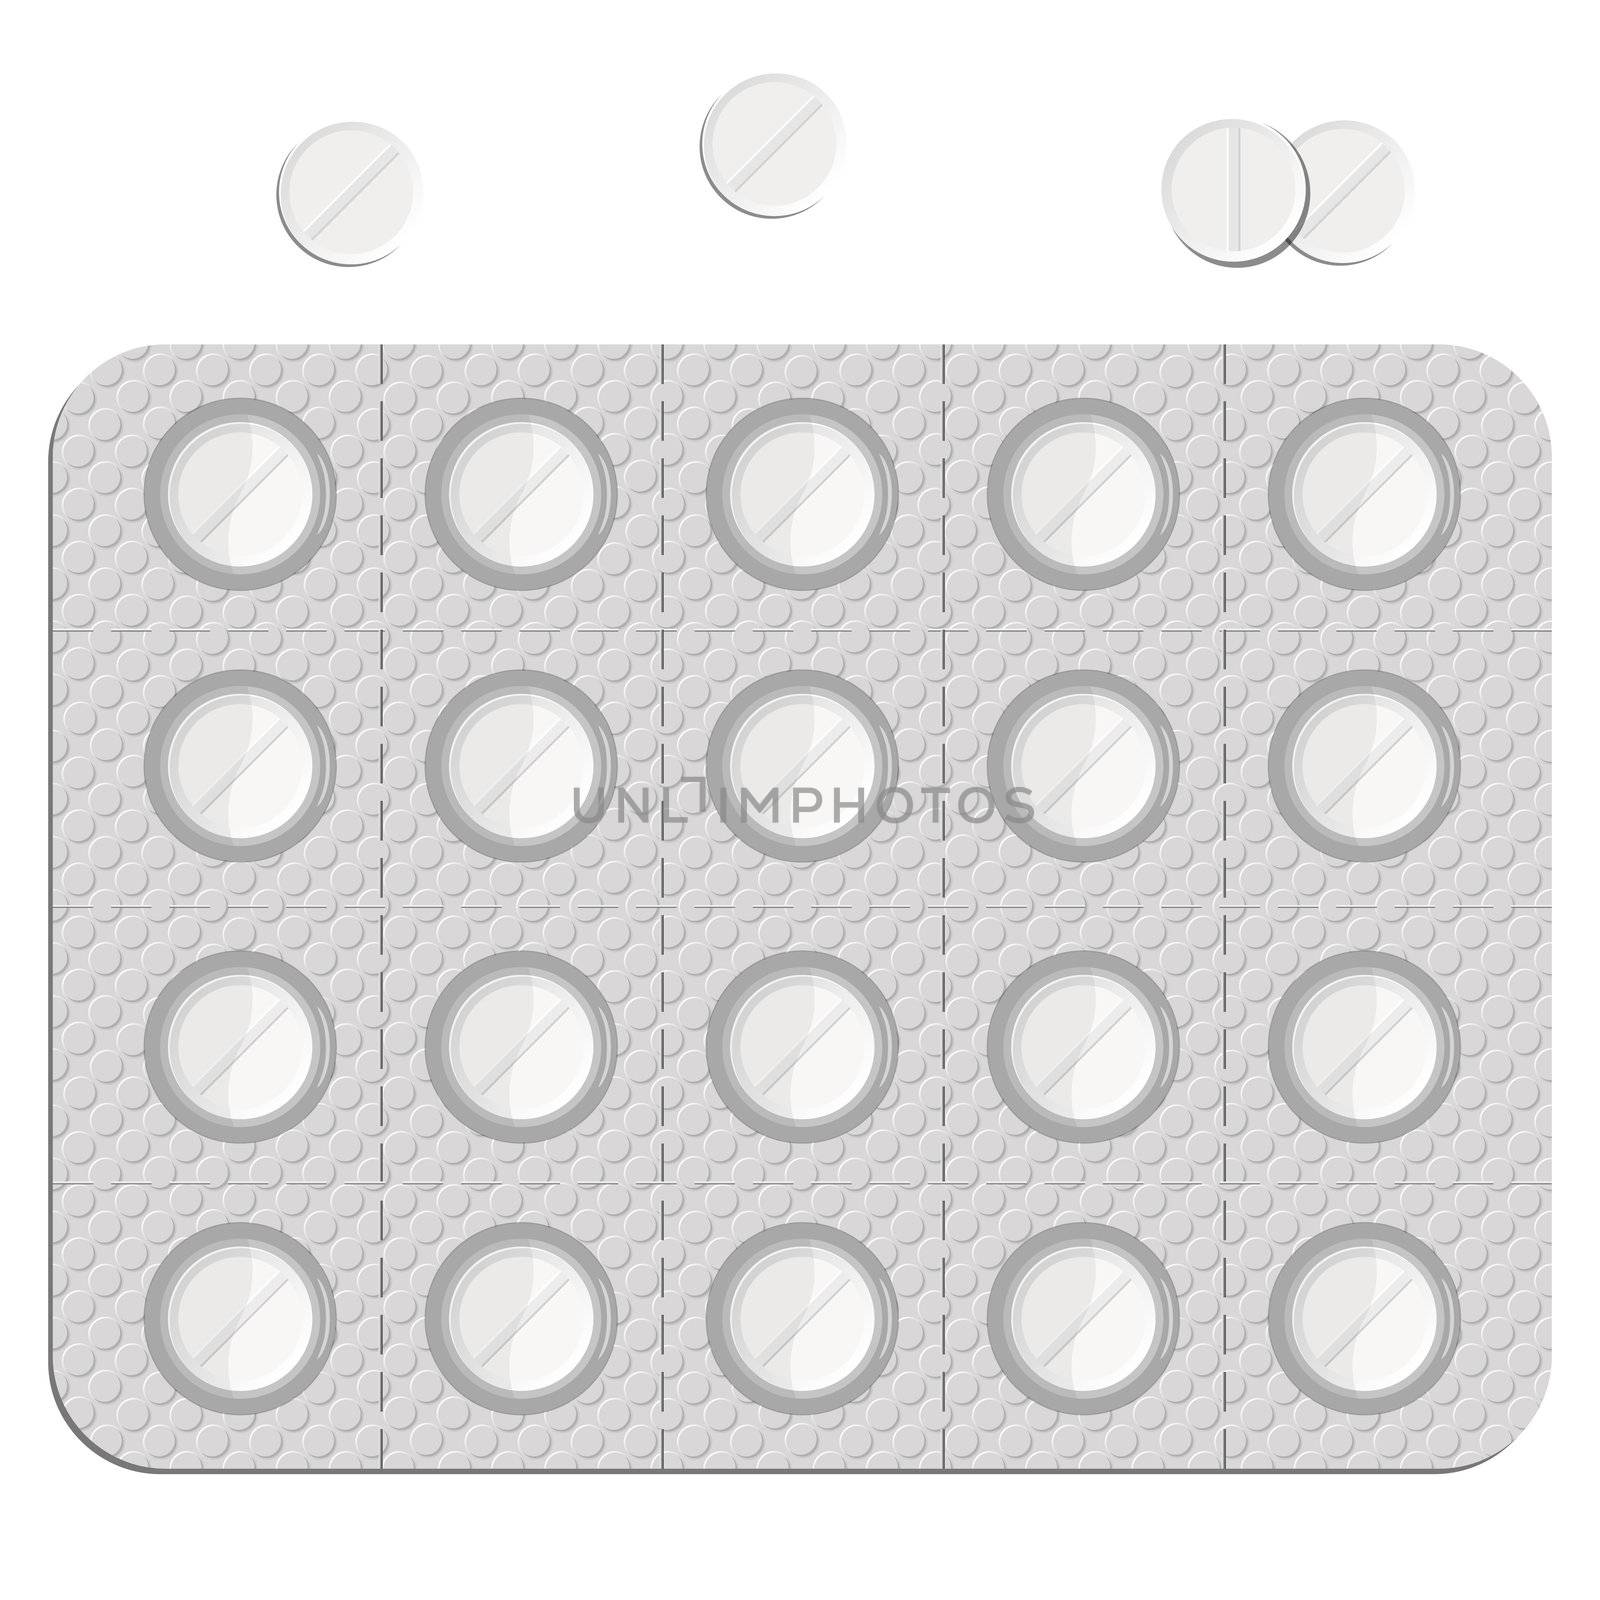 pills in a blister pack by robertosch